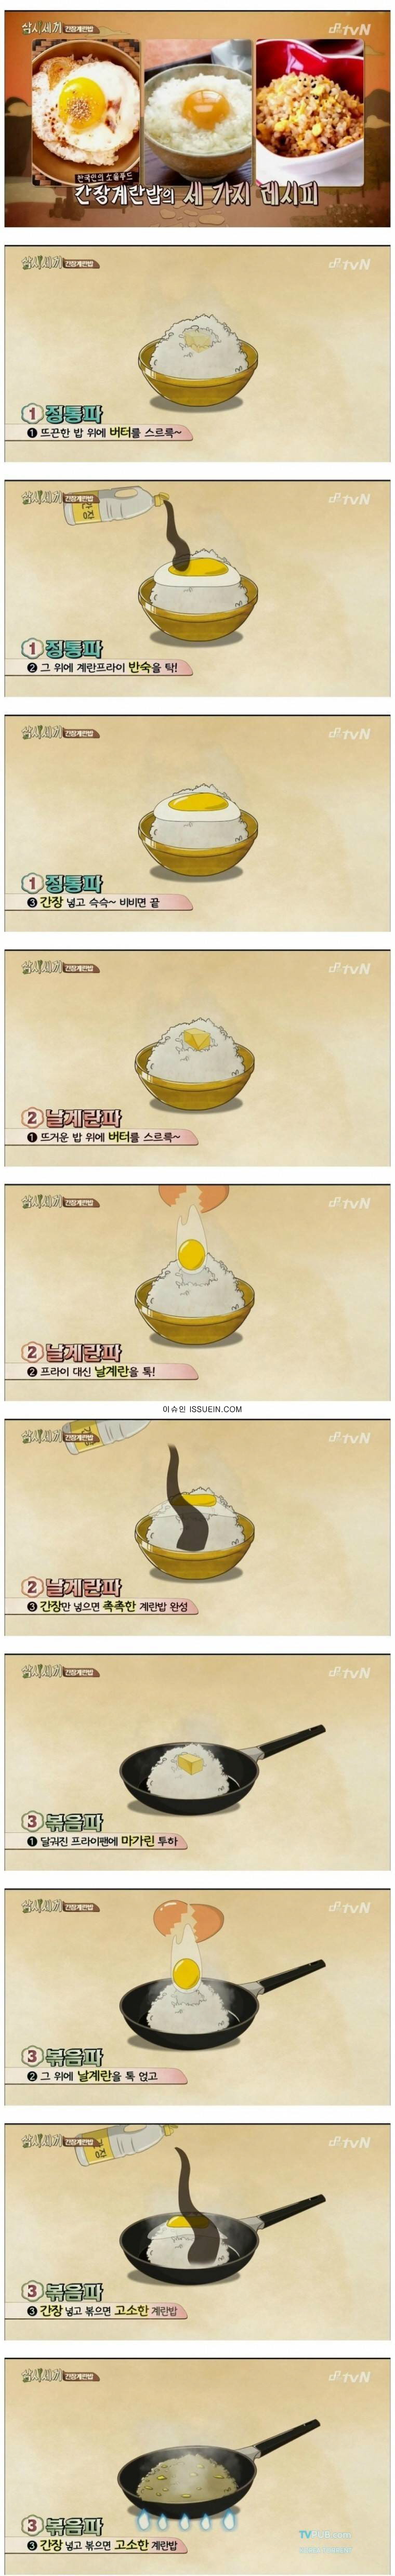 간장 계란밥 레시피.jpg